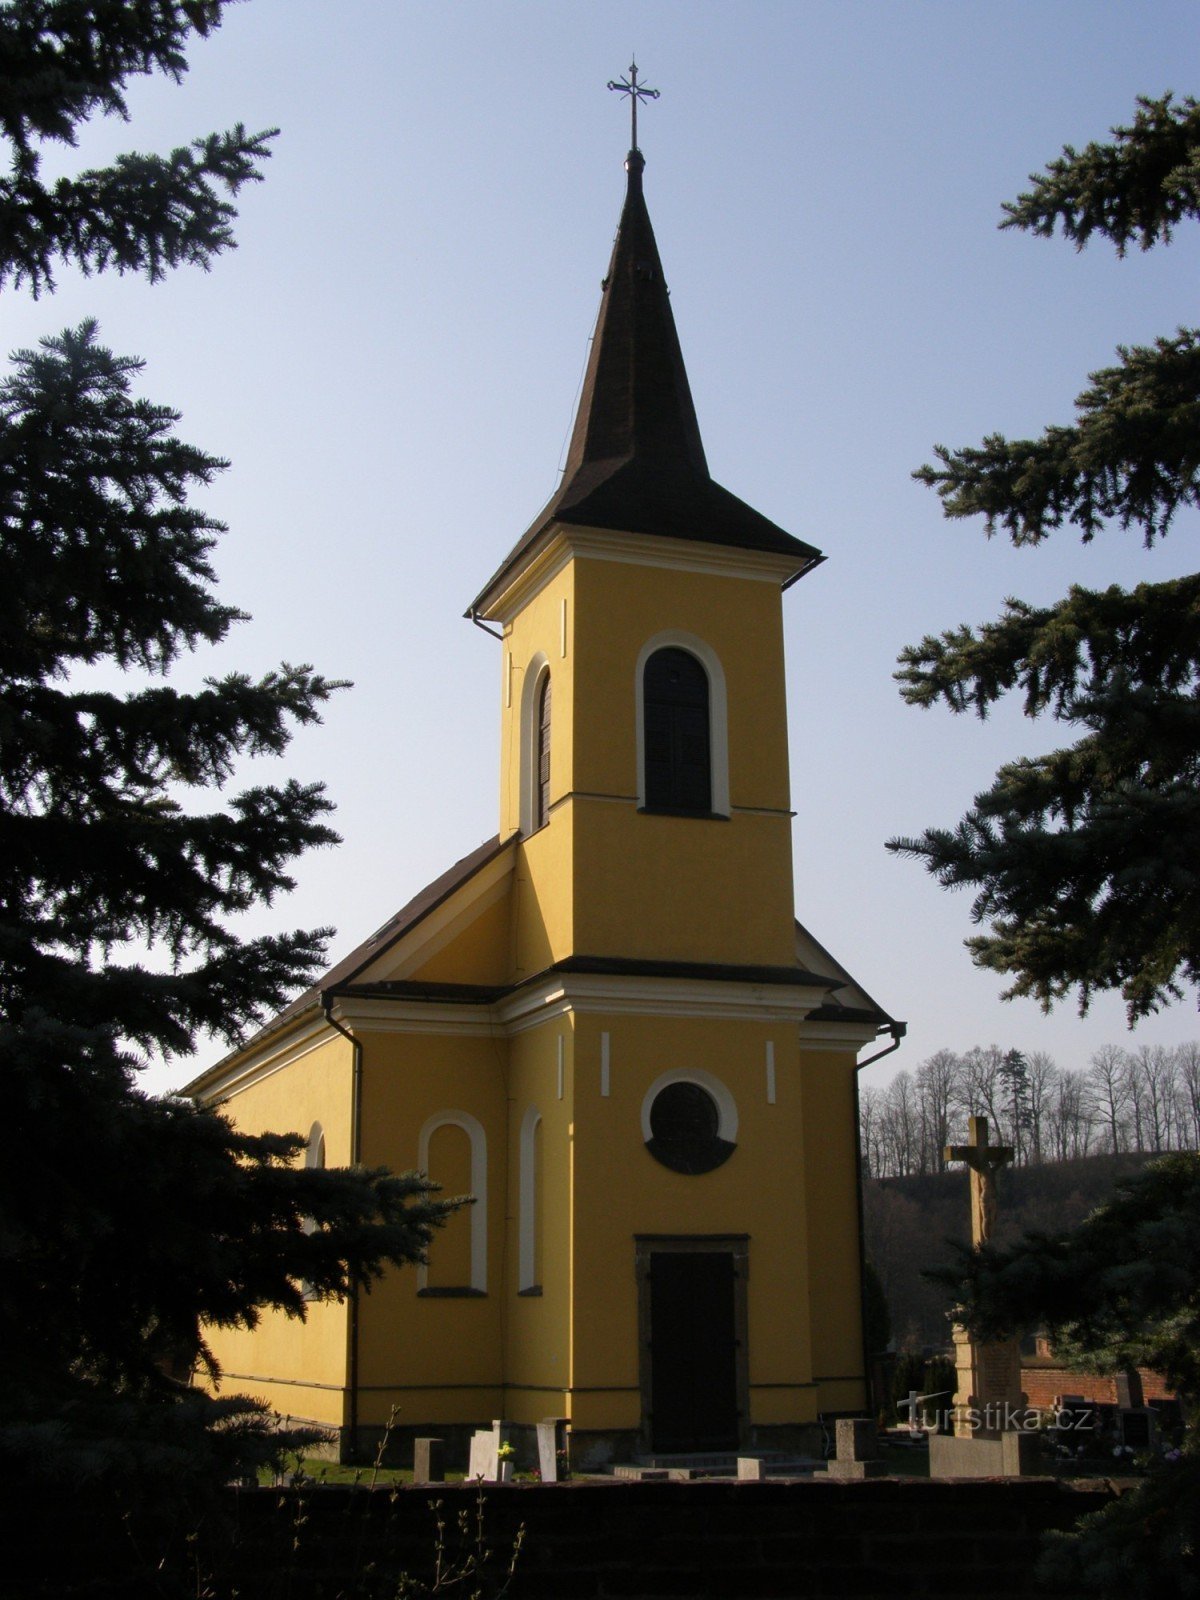 Helvíkovice - Szent Kápolna Antonina